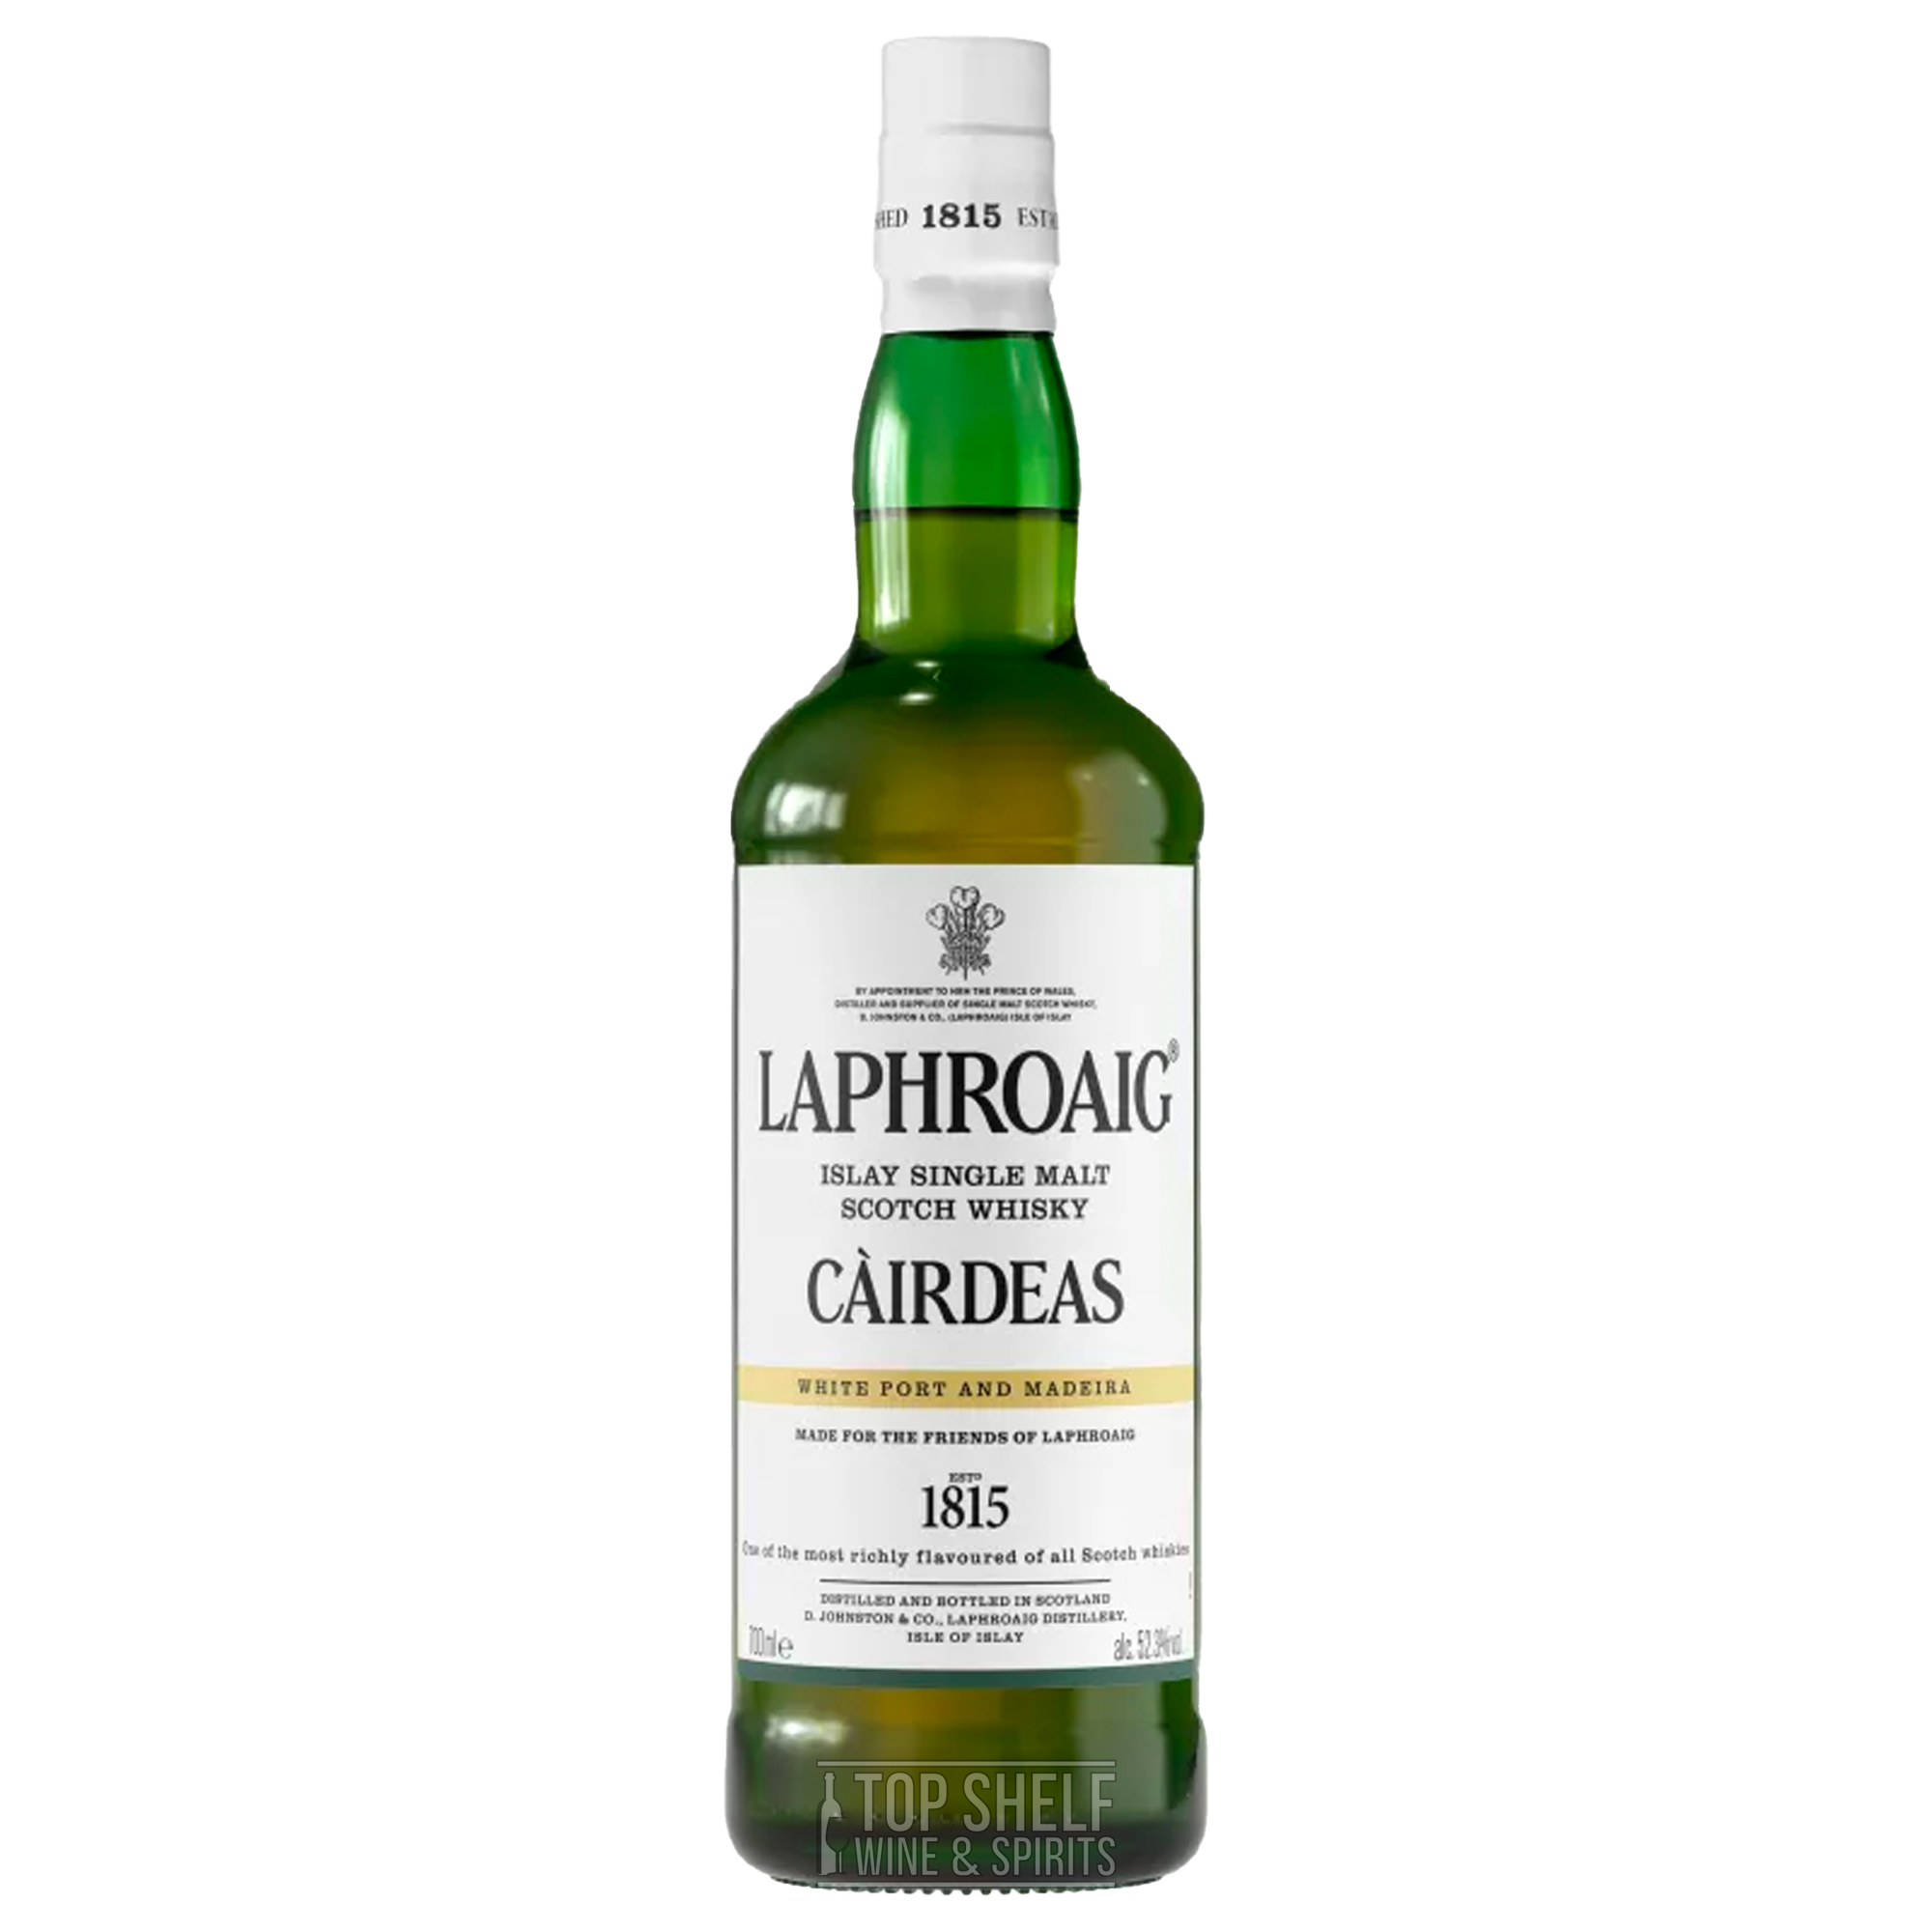 Laphroaig Cairdeas White Port and Madeira Single Malt Scotch